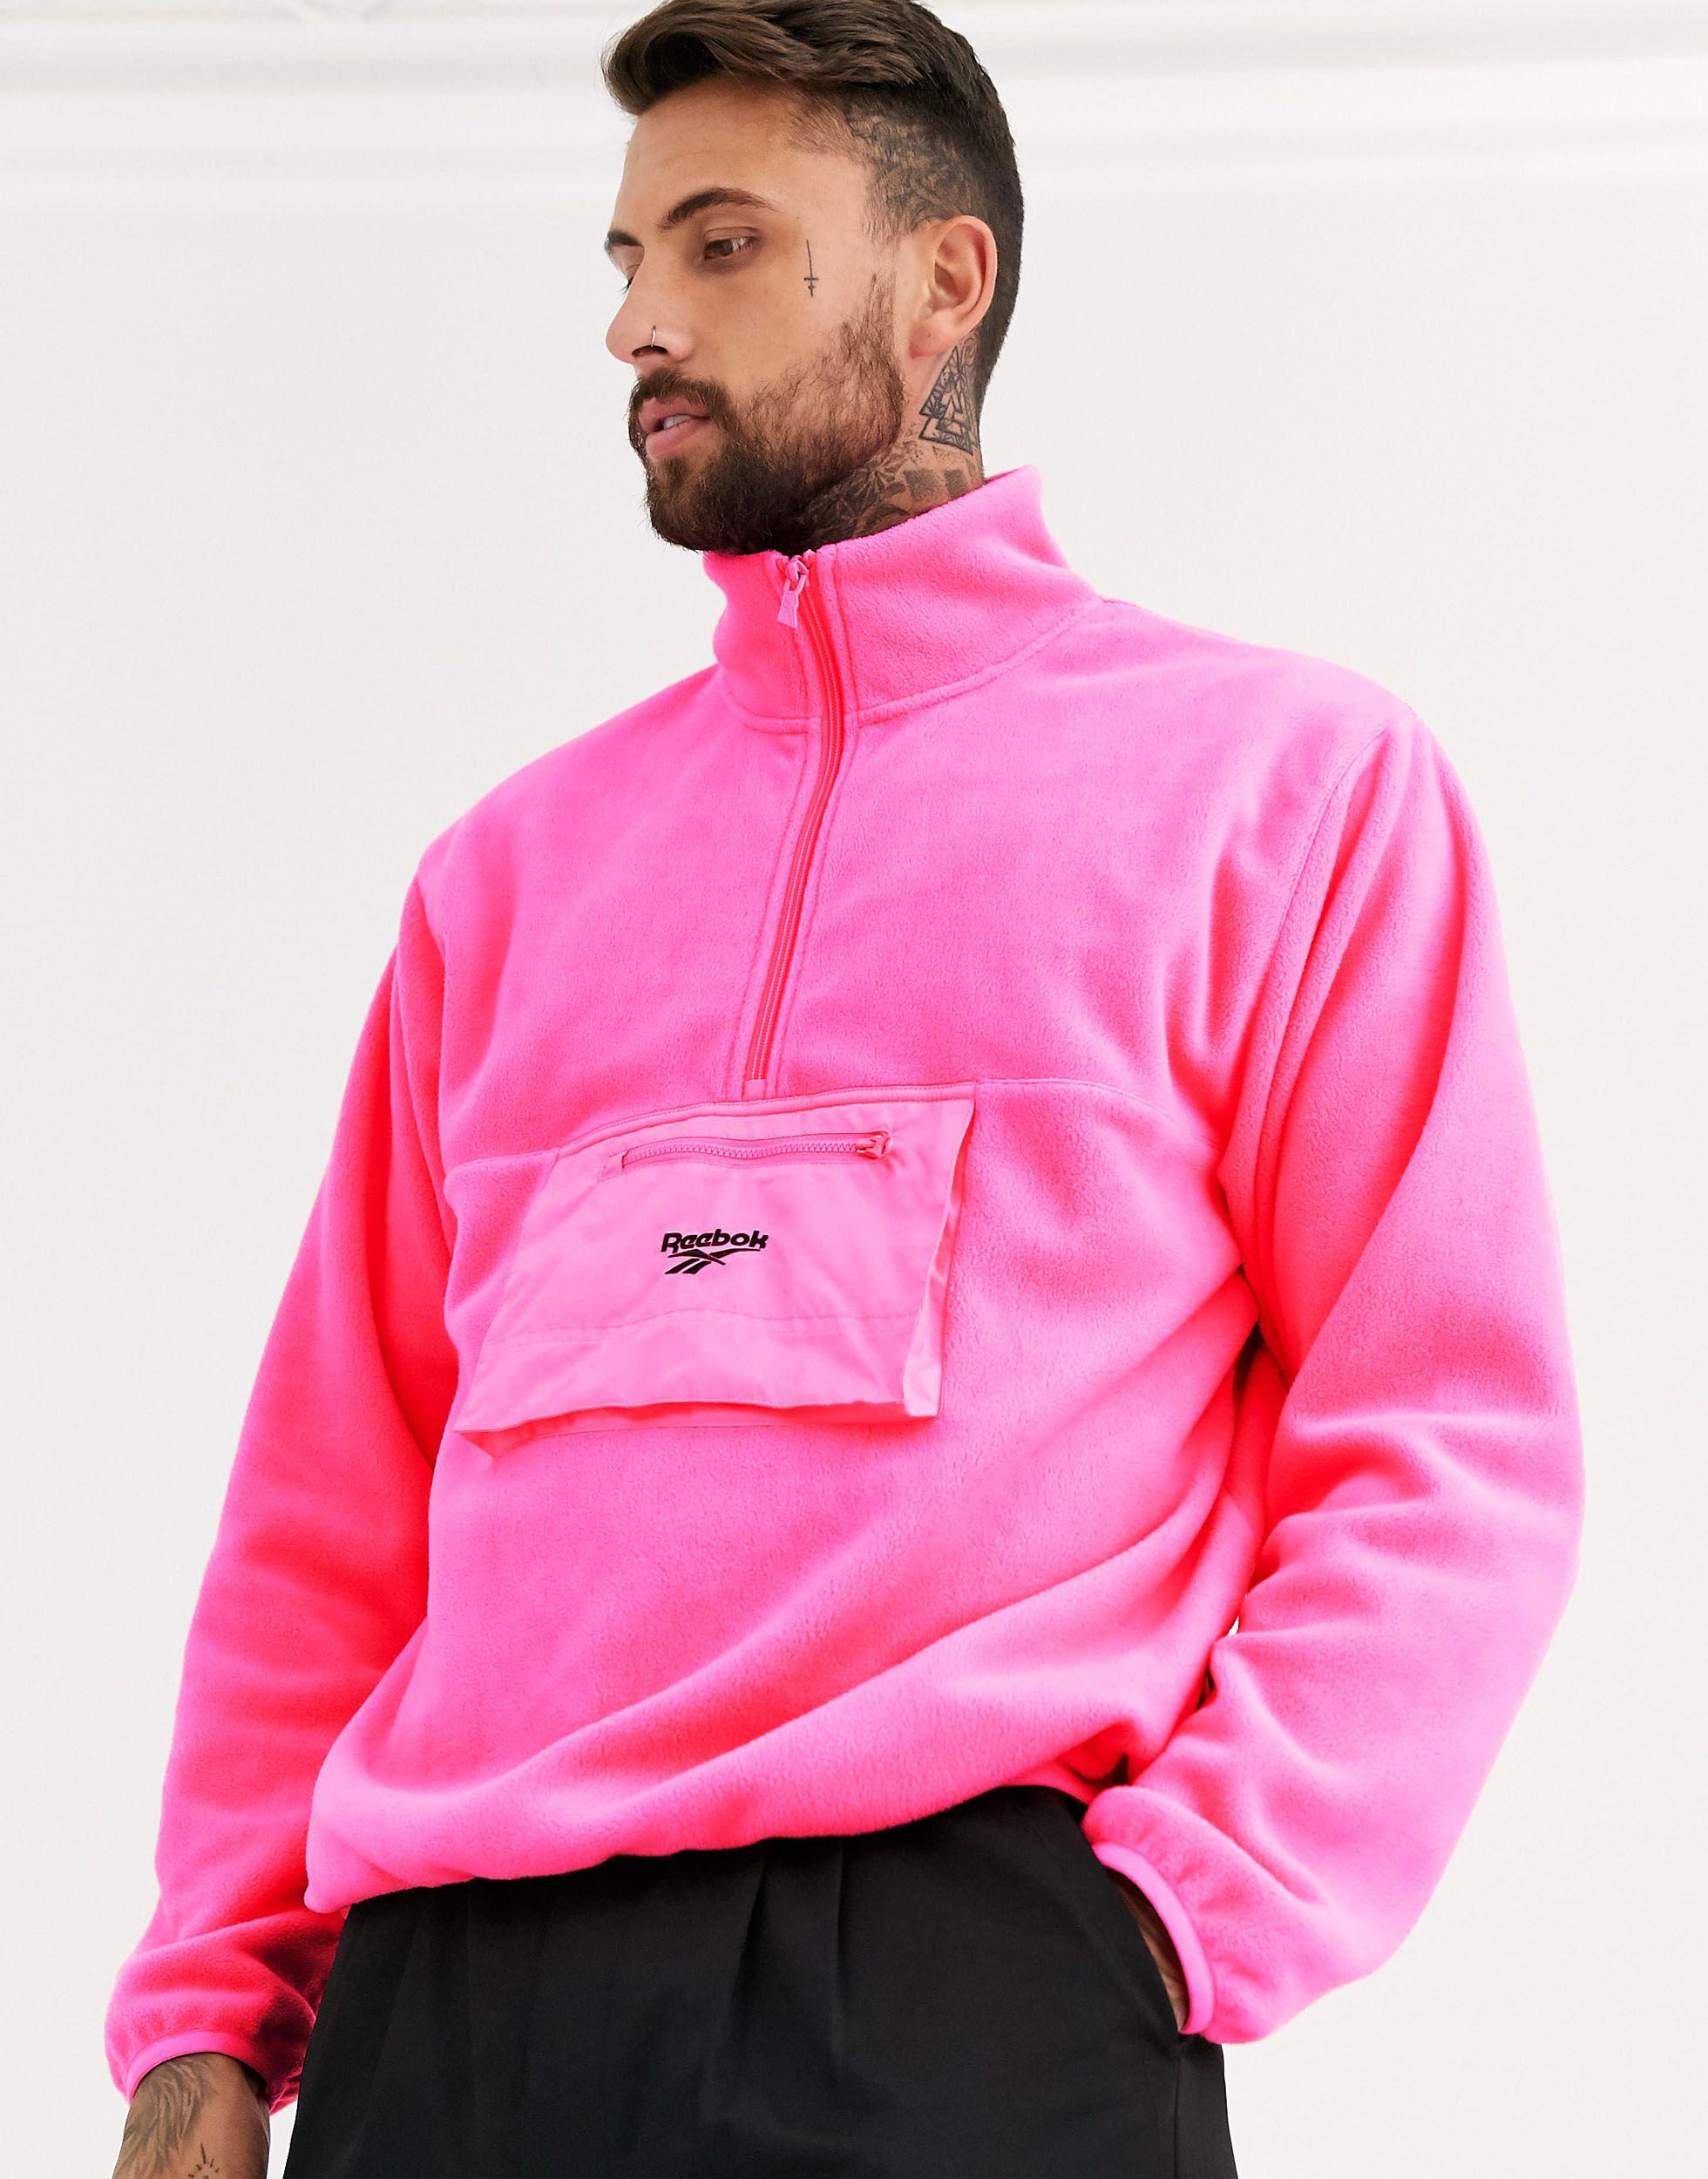 Reebok Trail Fleece Jacket in Pink for Men - Lyst